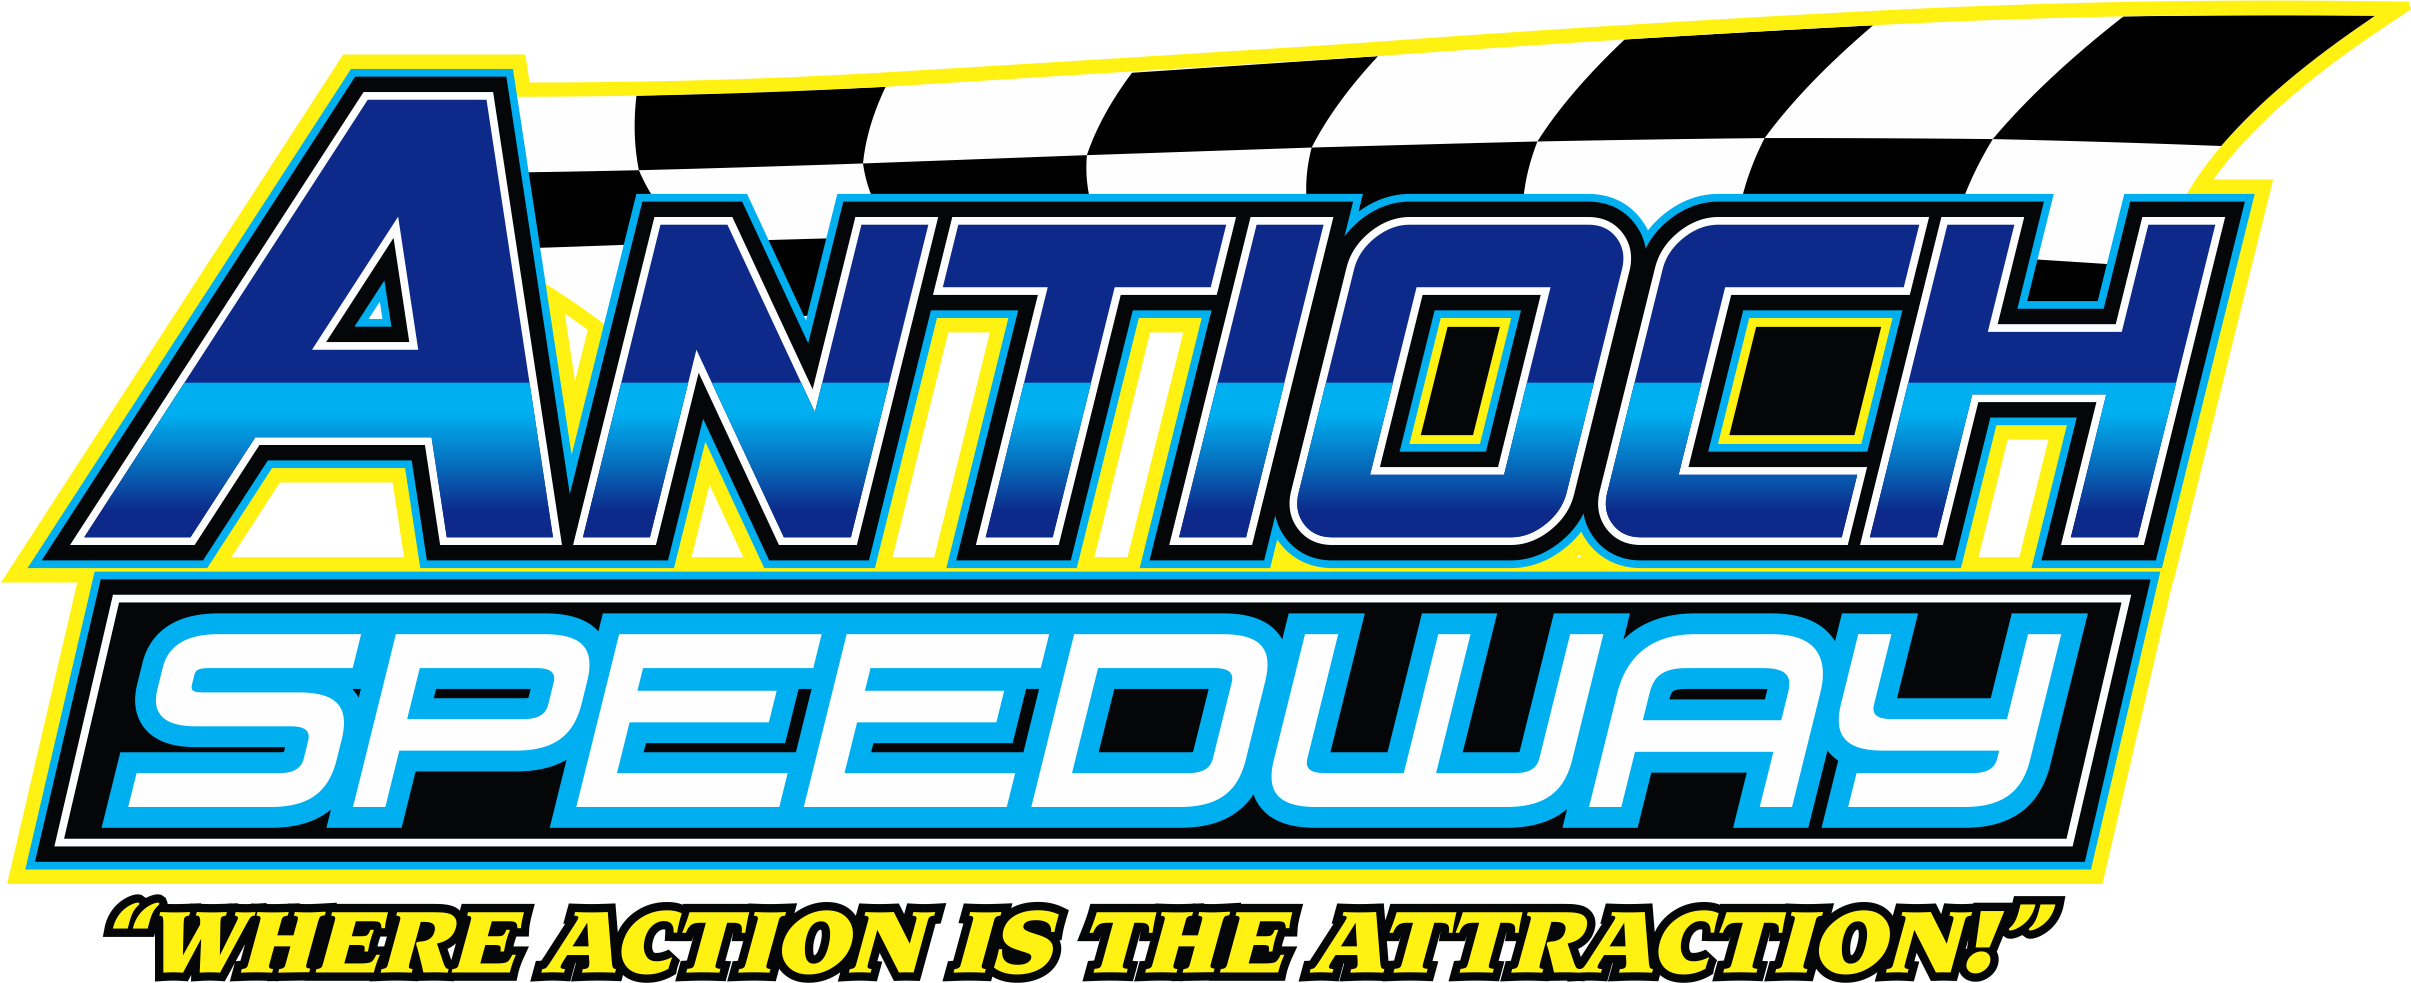 Antioch Speedway